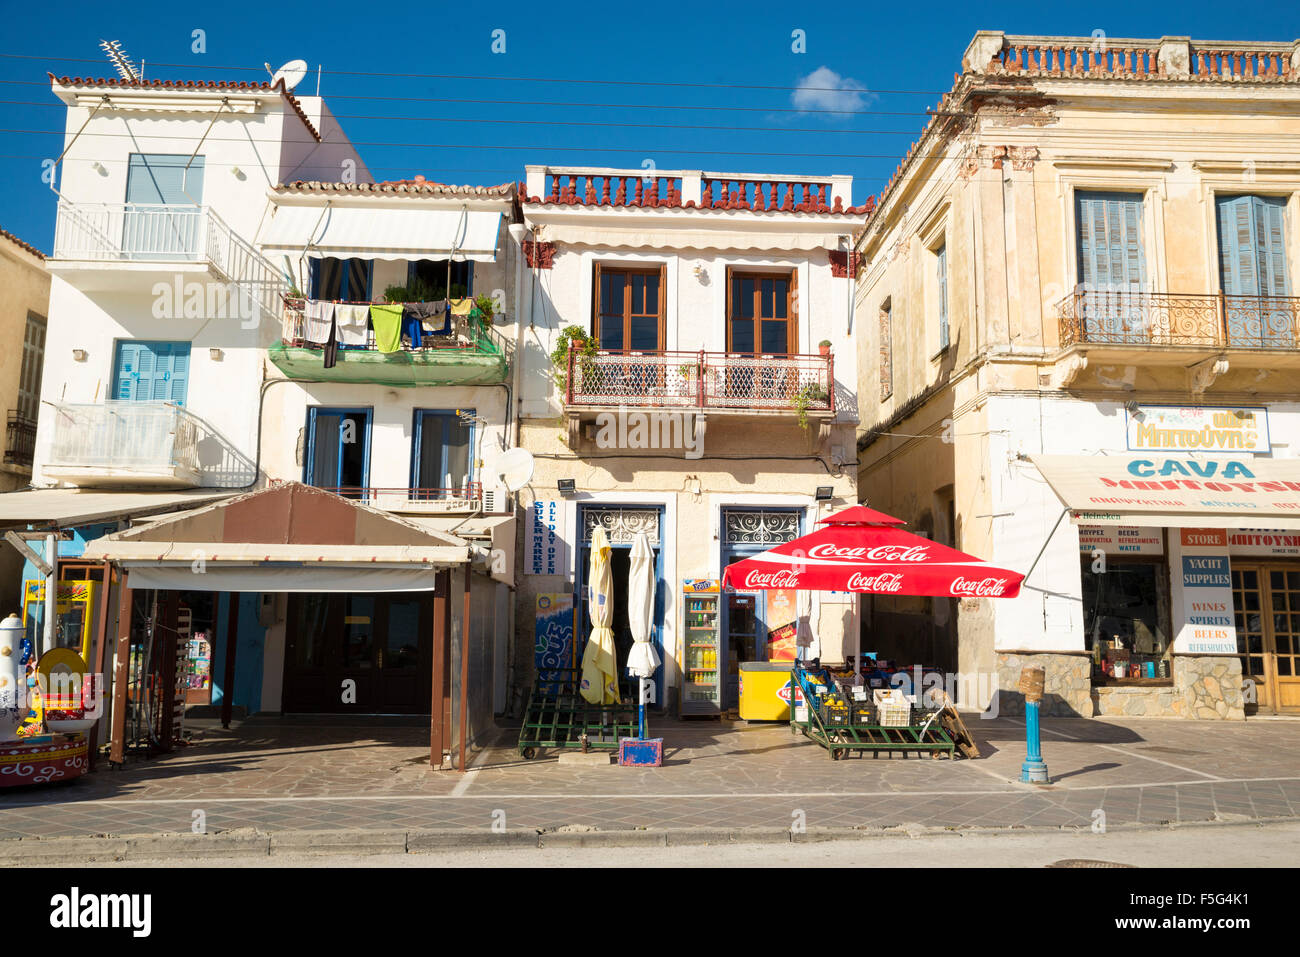 POROS, GREECE-OCTOBER 25, 2015: Gente en la ciudad de Poros, a a small Greek island-pair in the southern part of the Saronic Gul Stock Photo